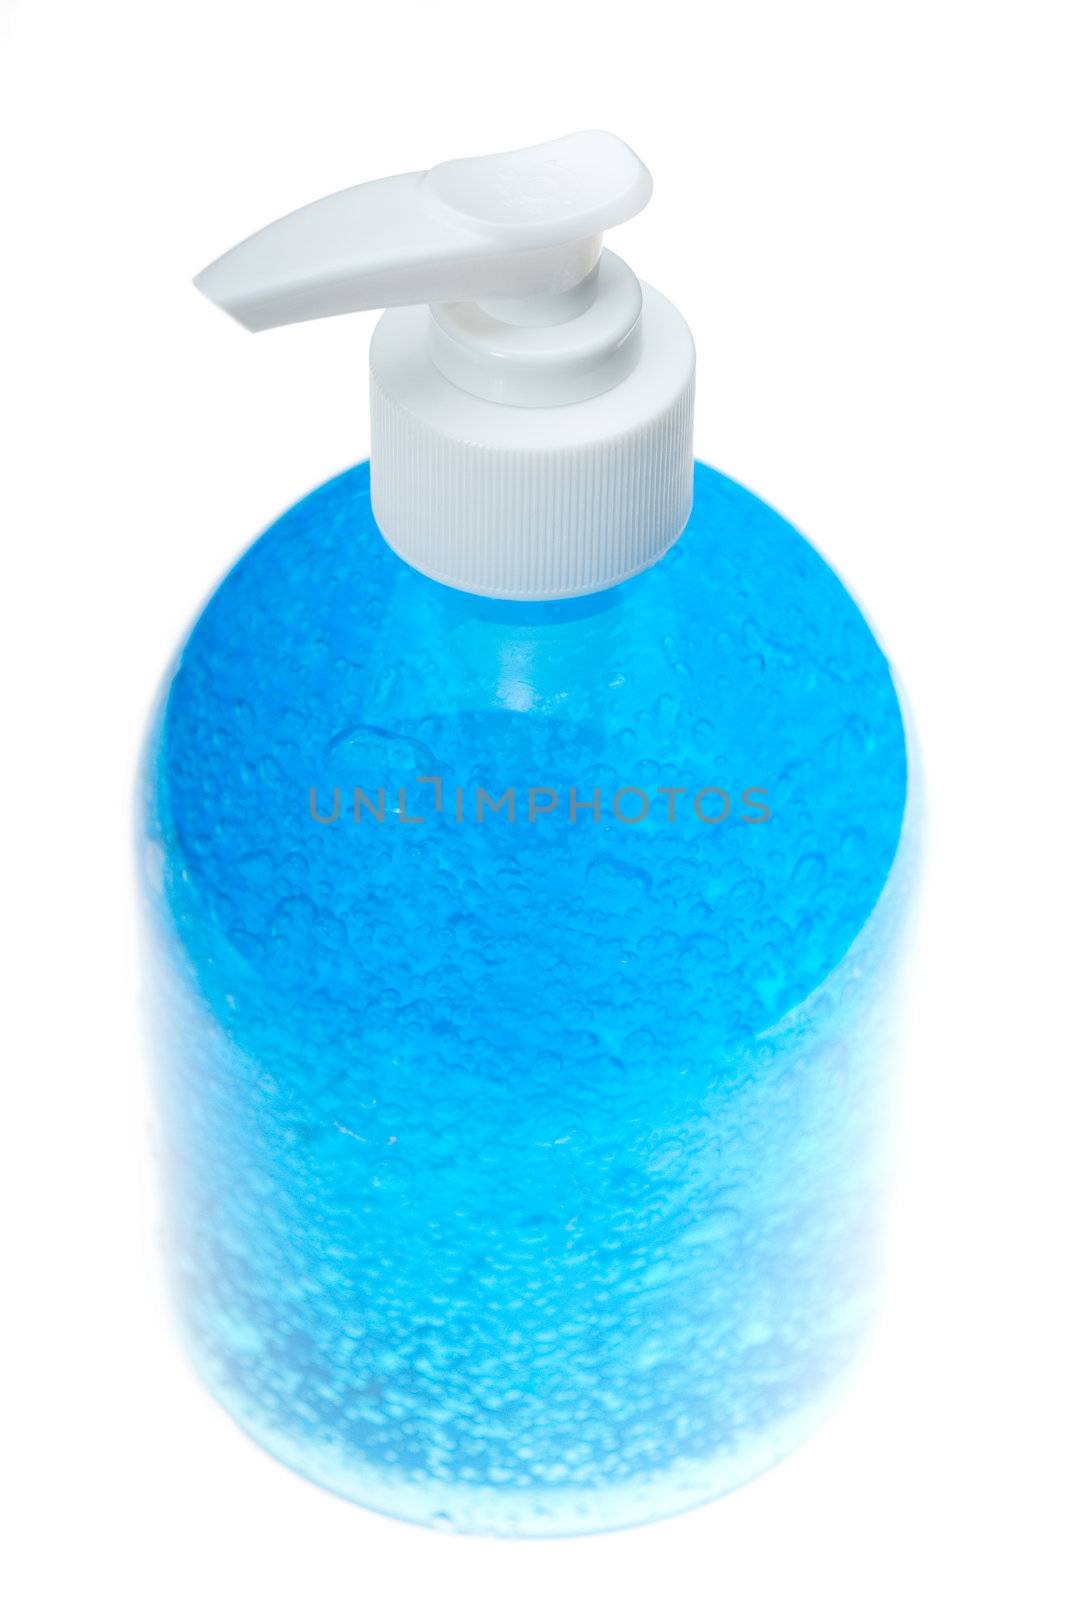 blue hair gel bottle over white by keko64